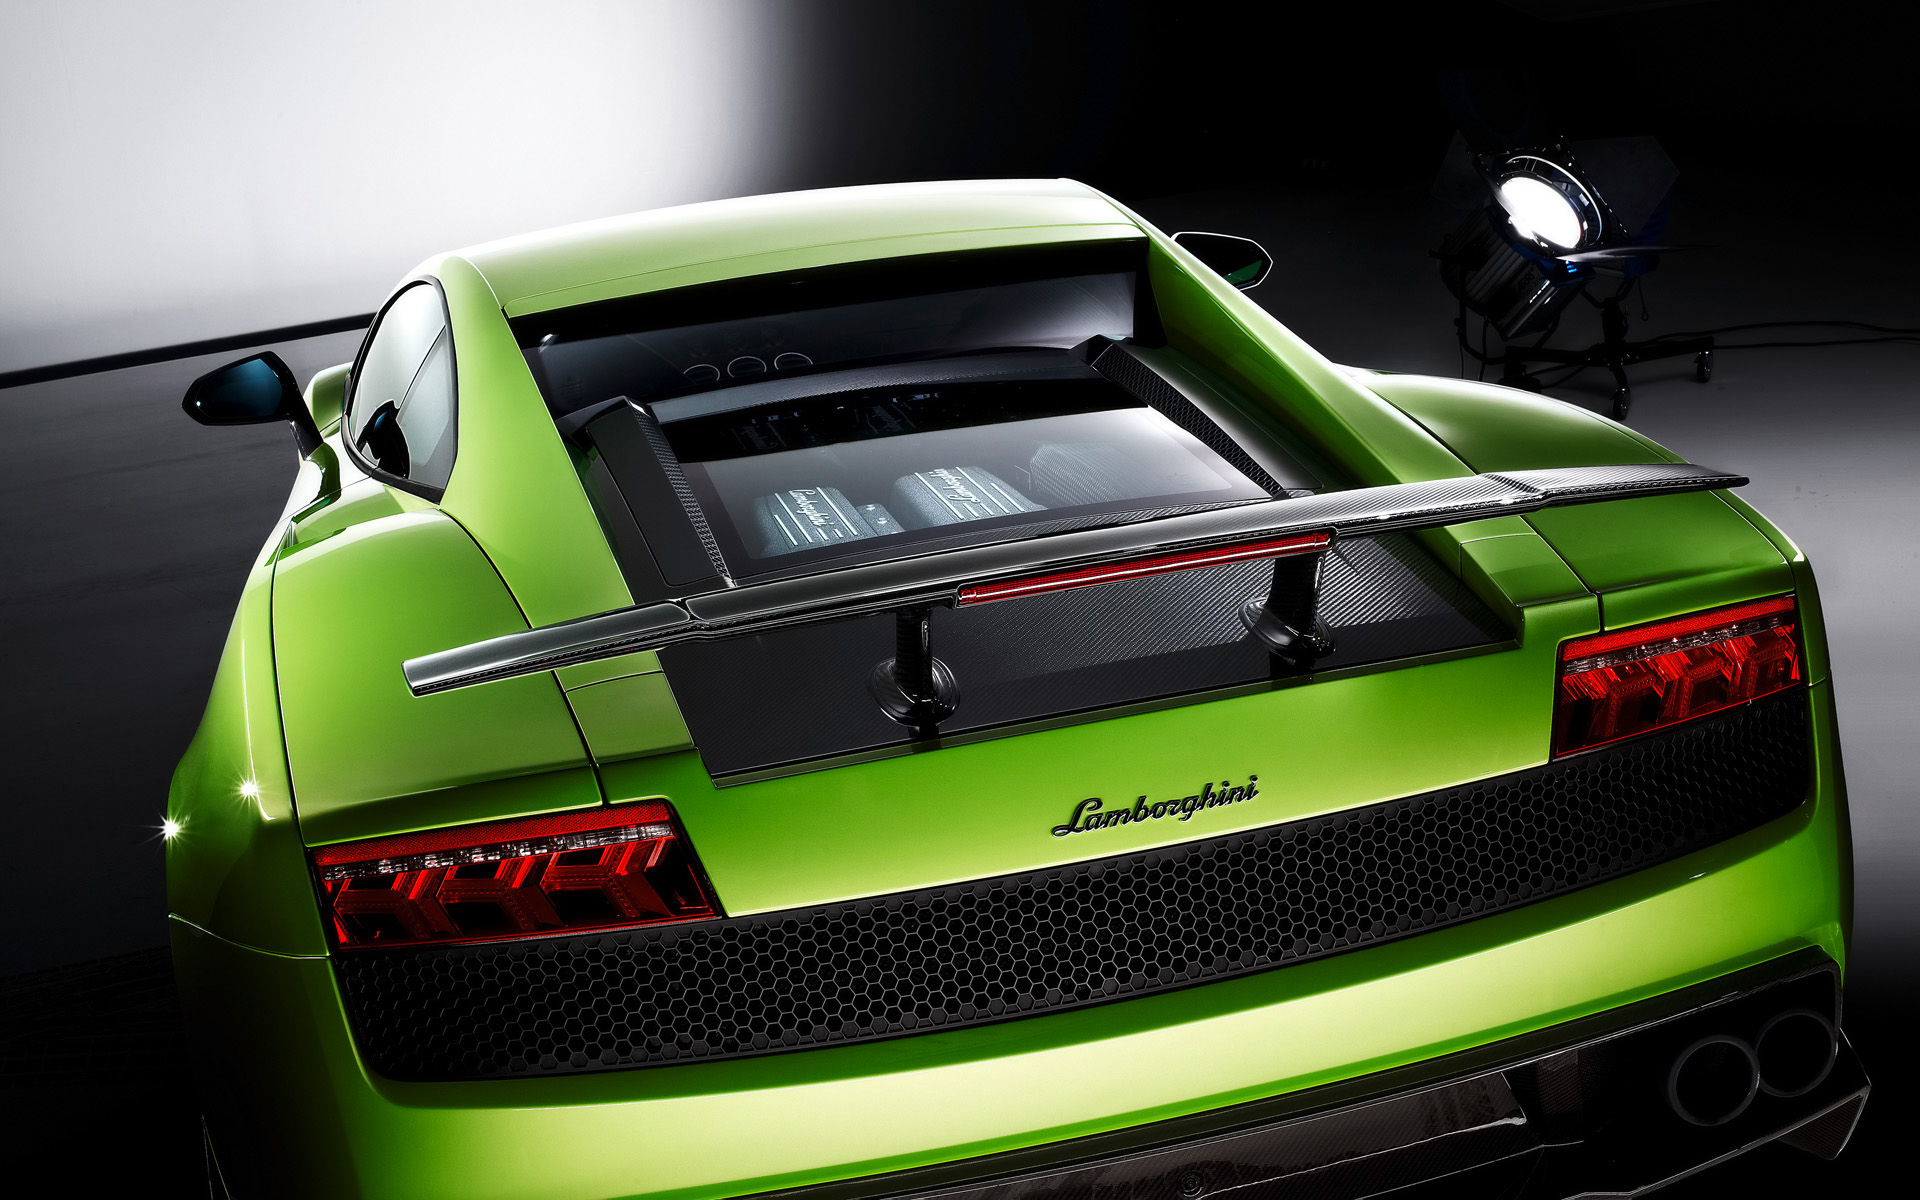  2010 Lamborghini Gallardo LP570-4 Superleggera Wallpaper.